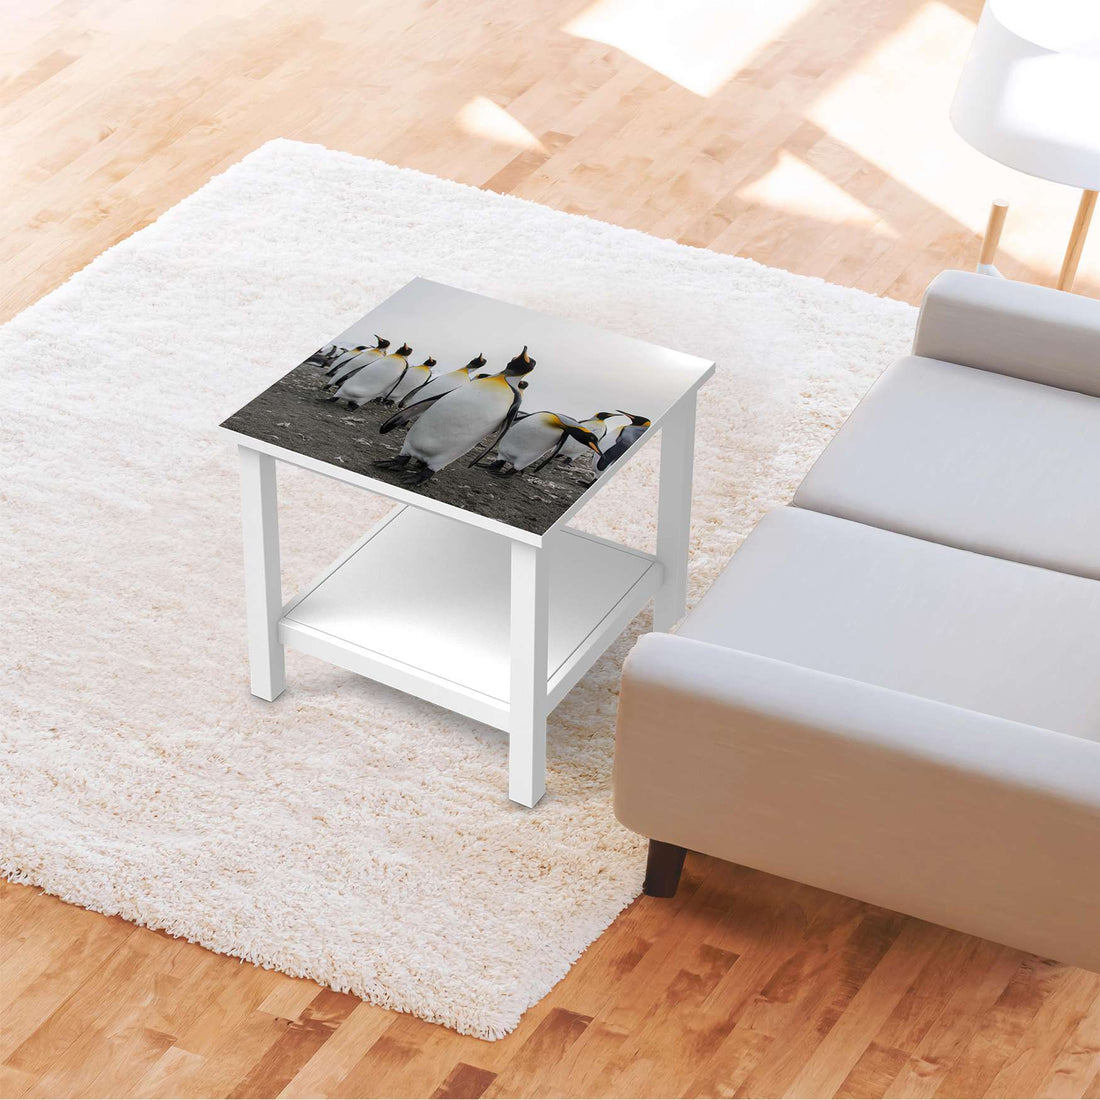 Möbel Klebefolie Penguin Family - IKEA Hemnes Beistelltisch 55x55 cm - Wohnzimmer